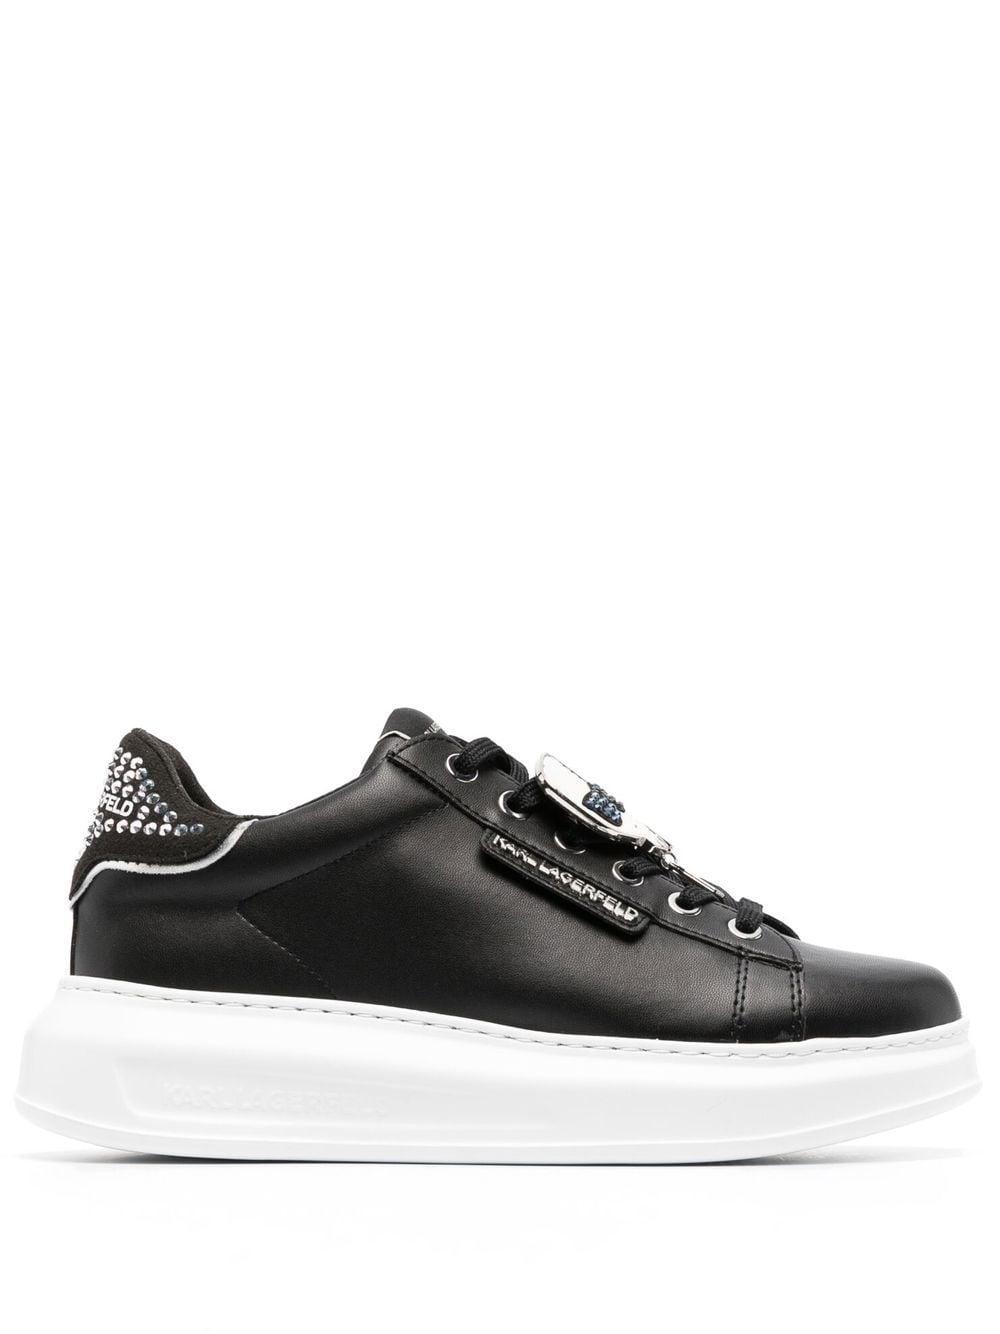 Karl Lagerfeld Kapri Ikonik Embellished Sneakers in Black | Lyst